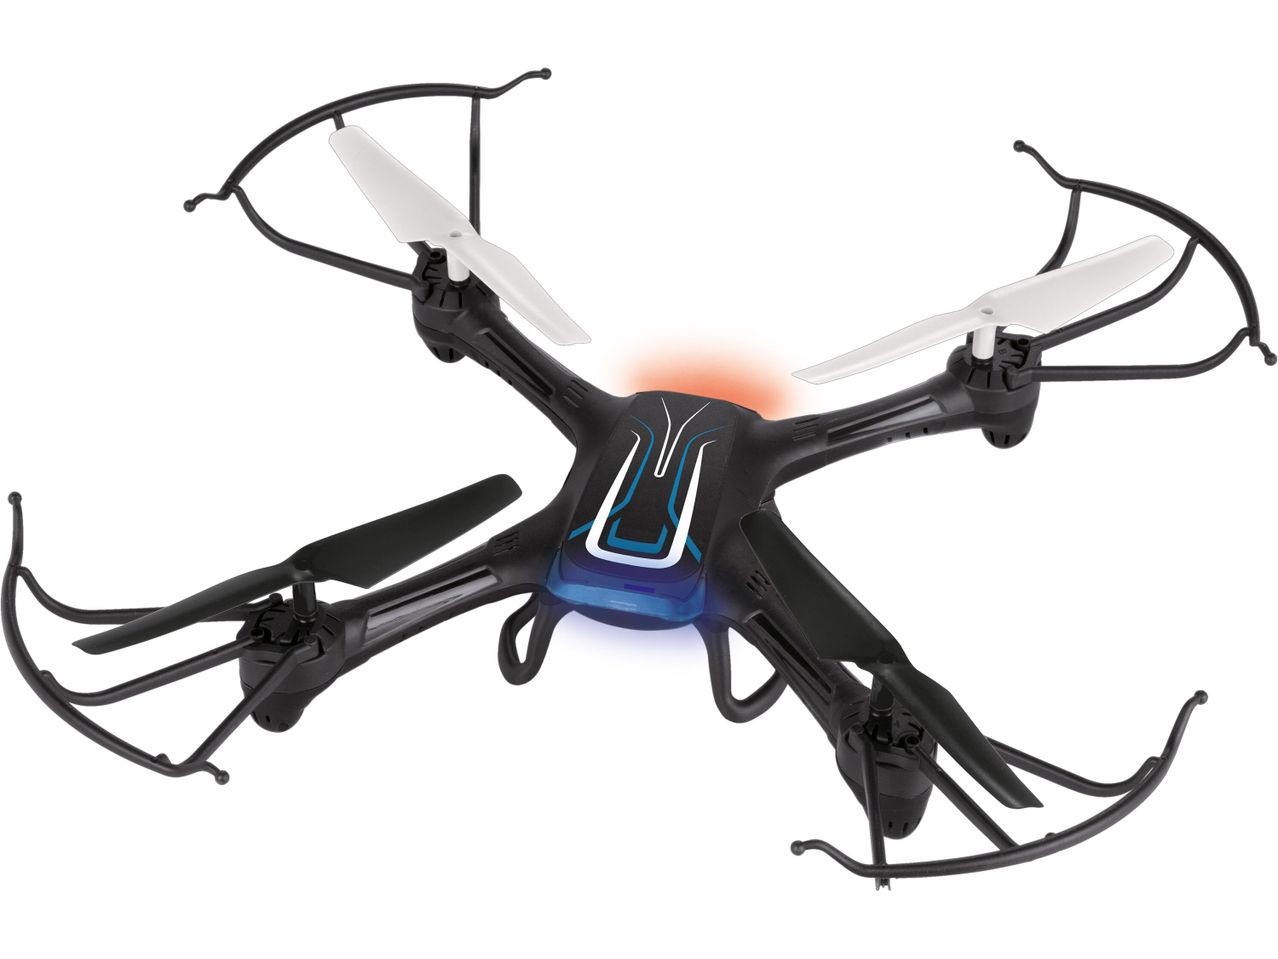 Dron zdalnie sterowany , cena 169 PLN 
Dron zdalnie sterowany 
- w zestawie: dron, ...